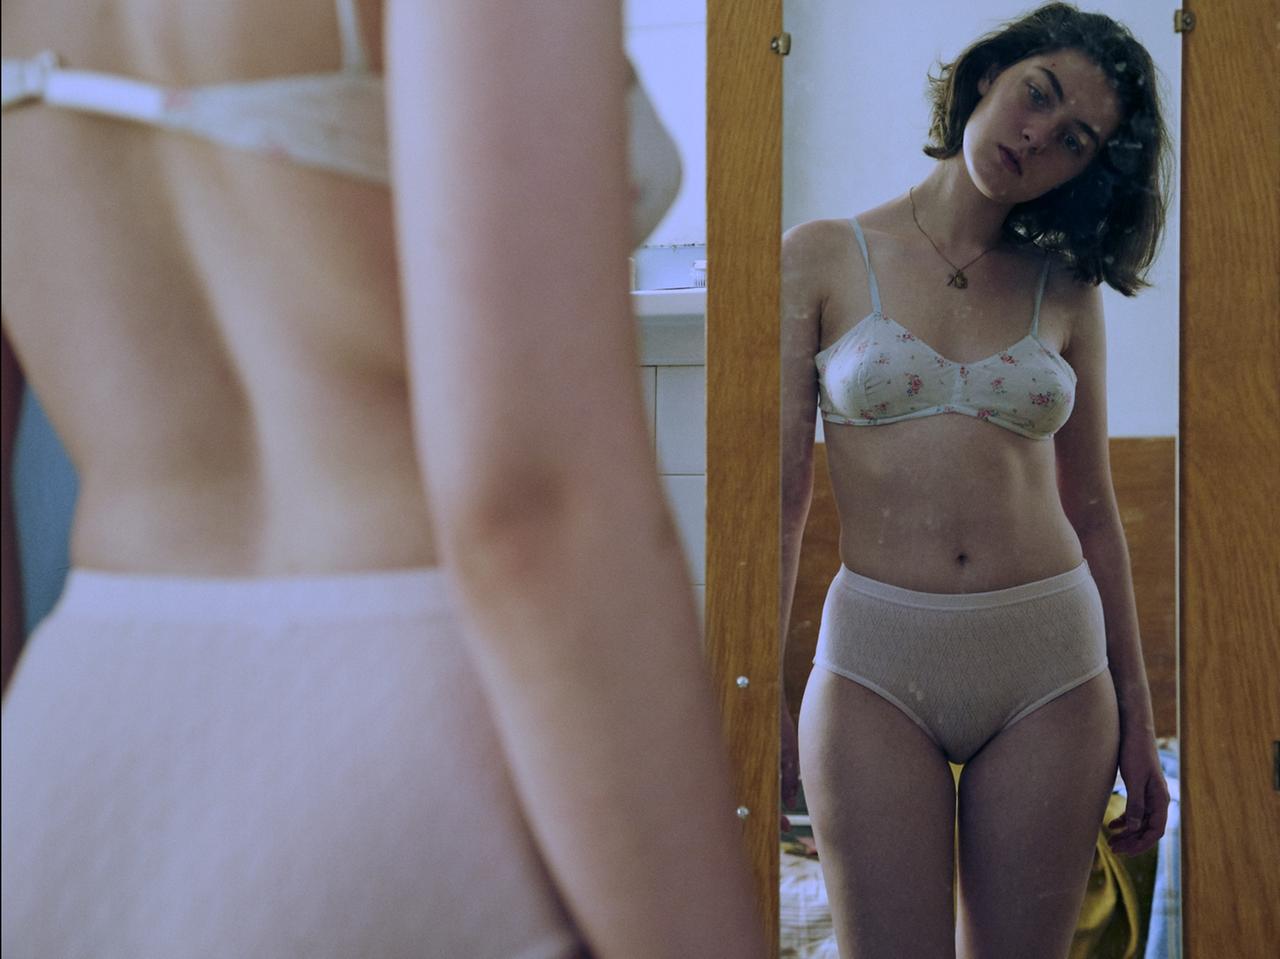 Anamaria Vartolome betrachtet sich in der Rolle der ungewollt schwangeren Anne im Spiegel. Sie trägt einen weißen BH und einen weißen Slip.